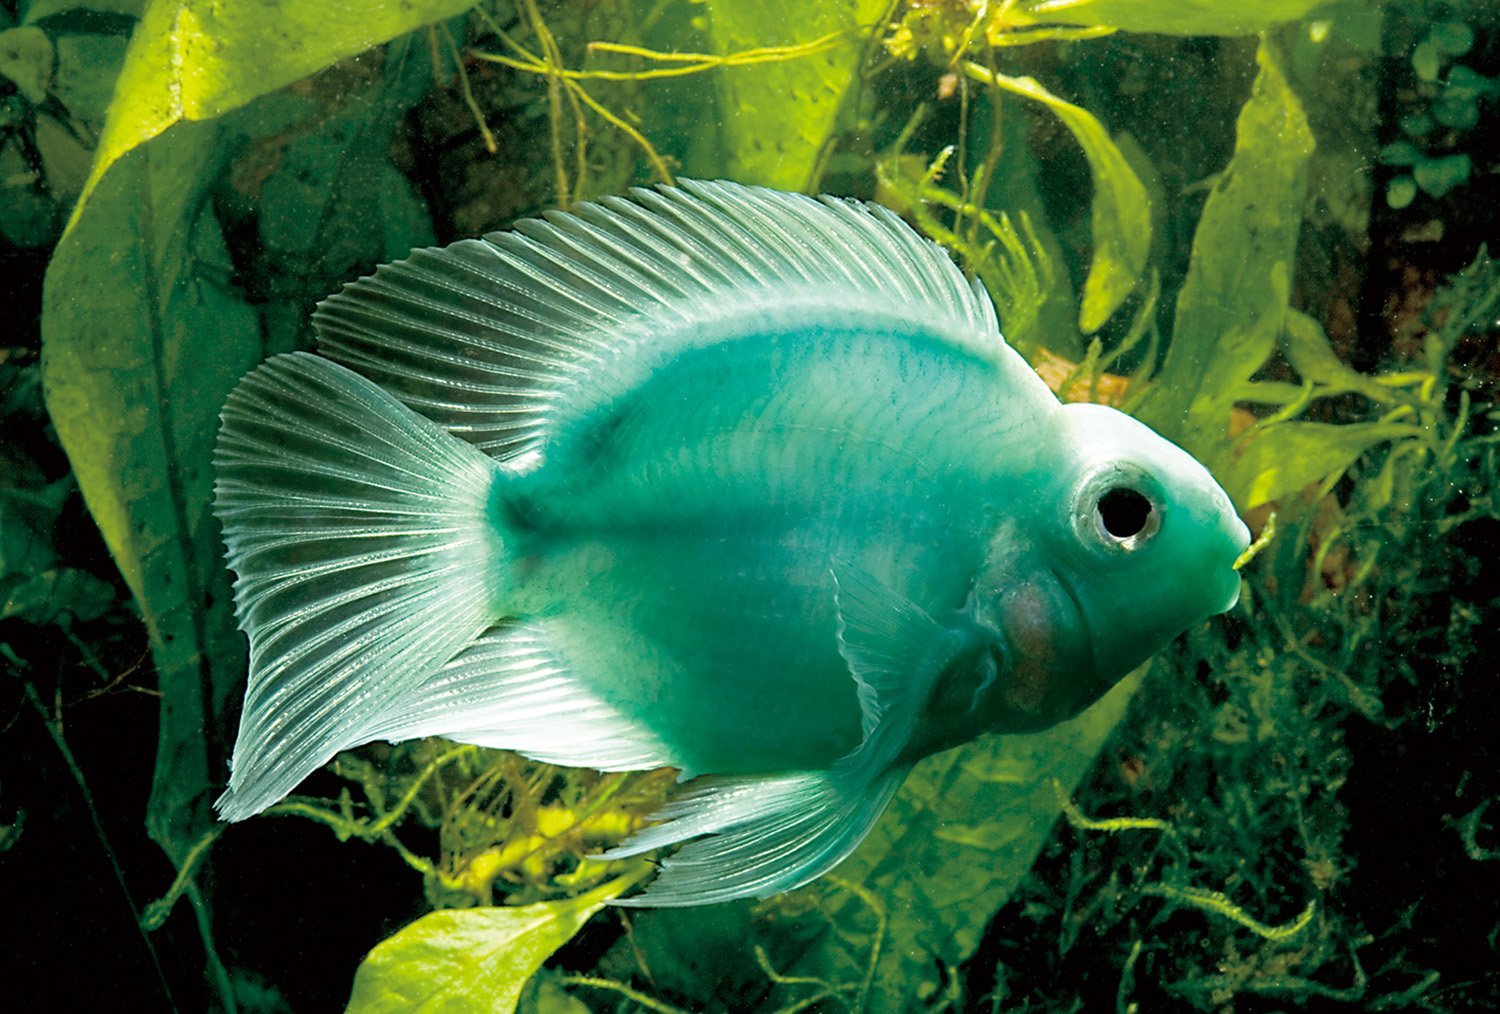 Зеленые аквариумные рыбки. Зелёная шишколобая рыба-попугай. Аквариумная рыбка трехгибридный попугай. Цихлида попугай трехгибридный. Попугай голубая Панда рыбка аквариумная.